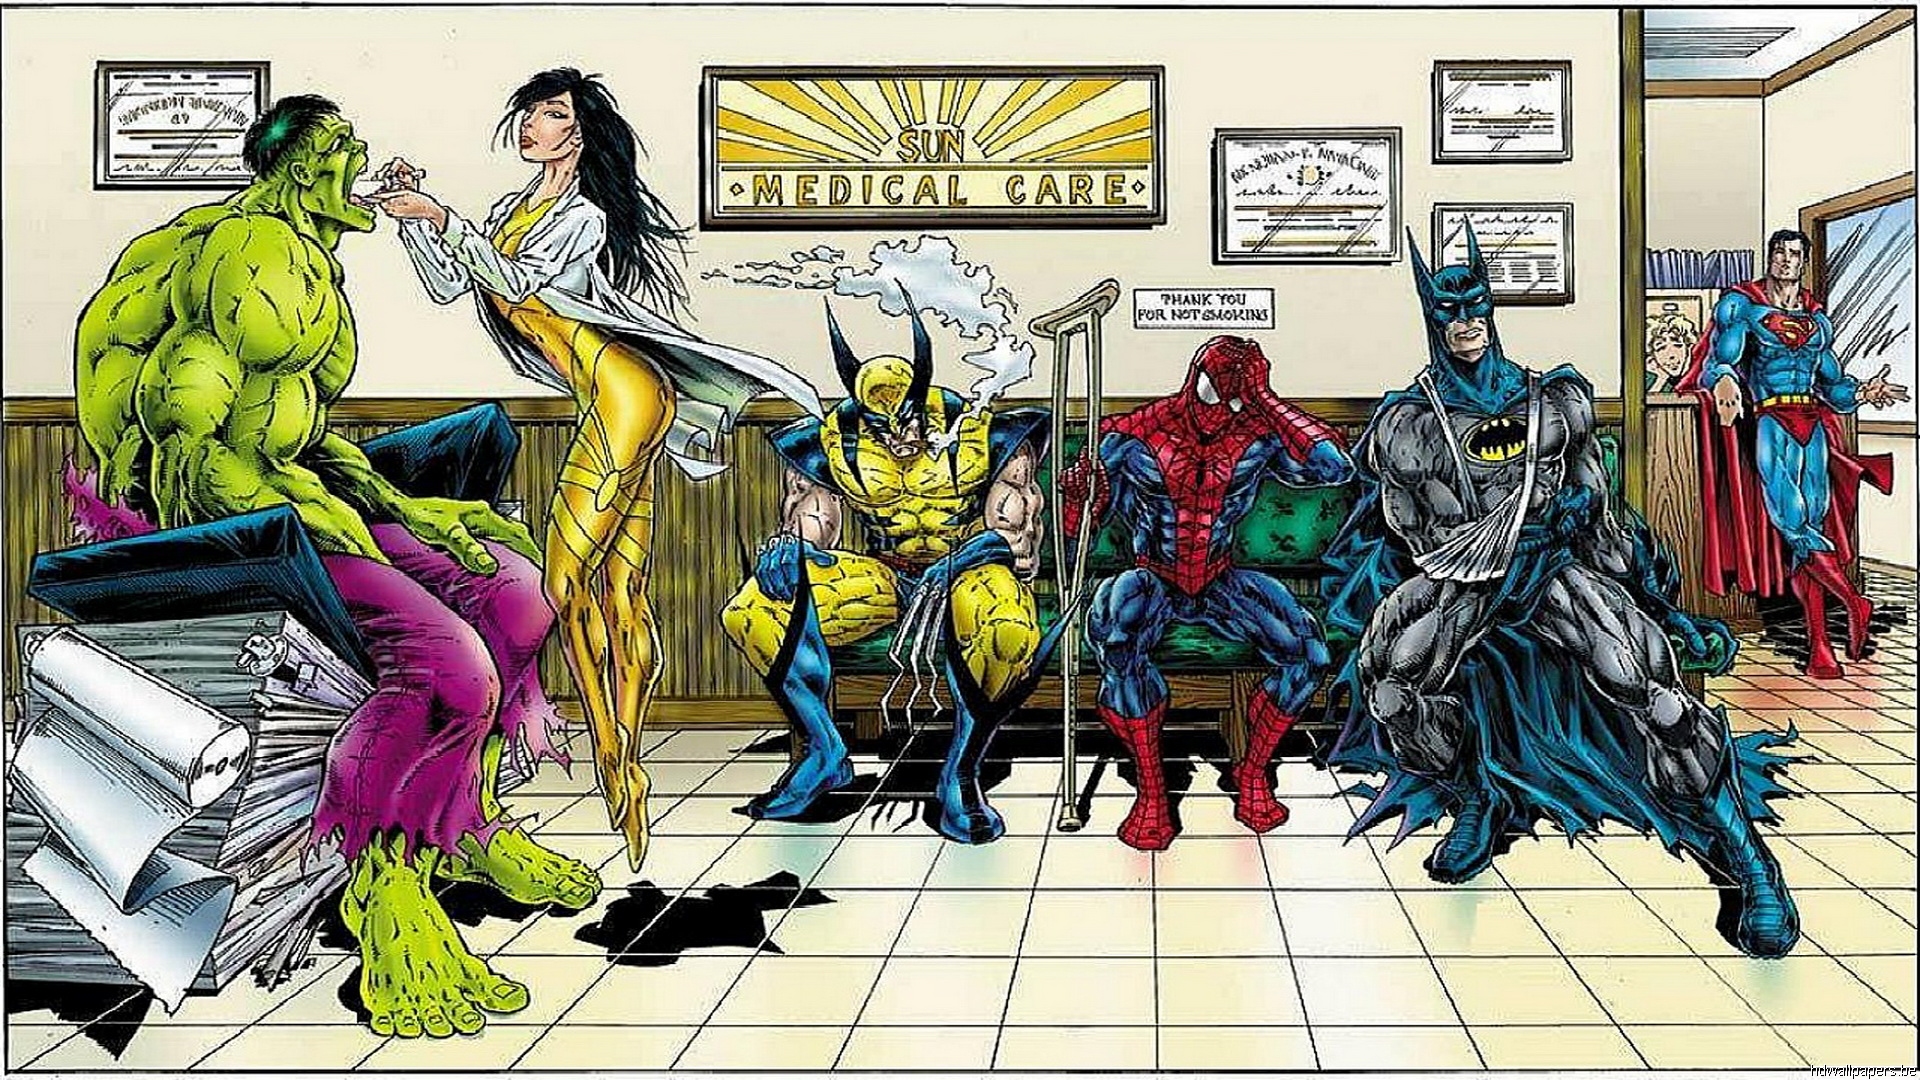 fond d'écran hd comics,personnage fictif,super héros,des bandes dessinées,fiction,homme araignée